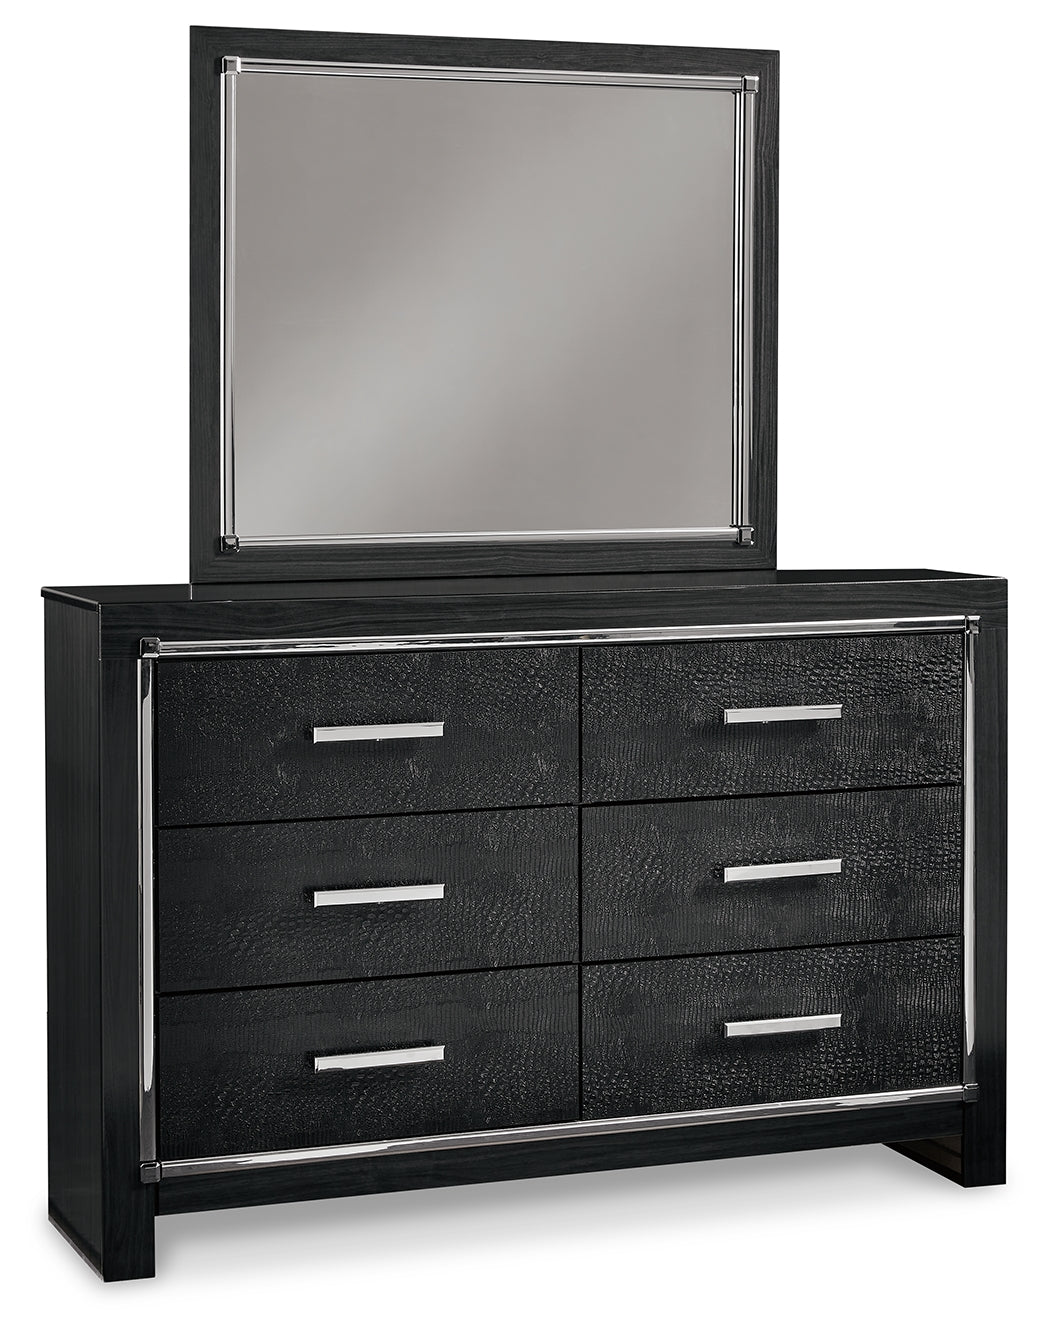 Kaydell Queen Panel Bedroom Set with Storage, Dresser and Mirror